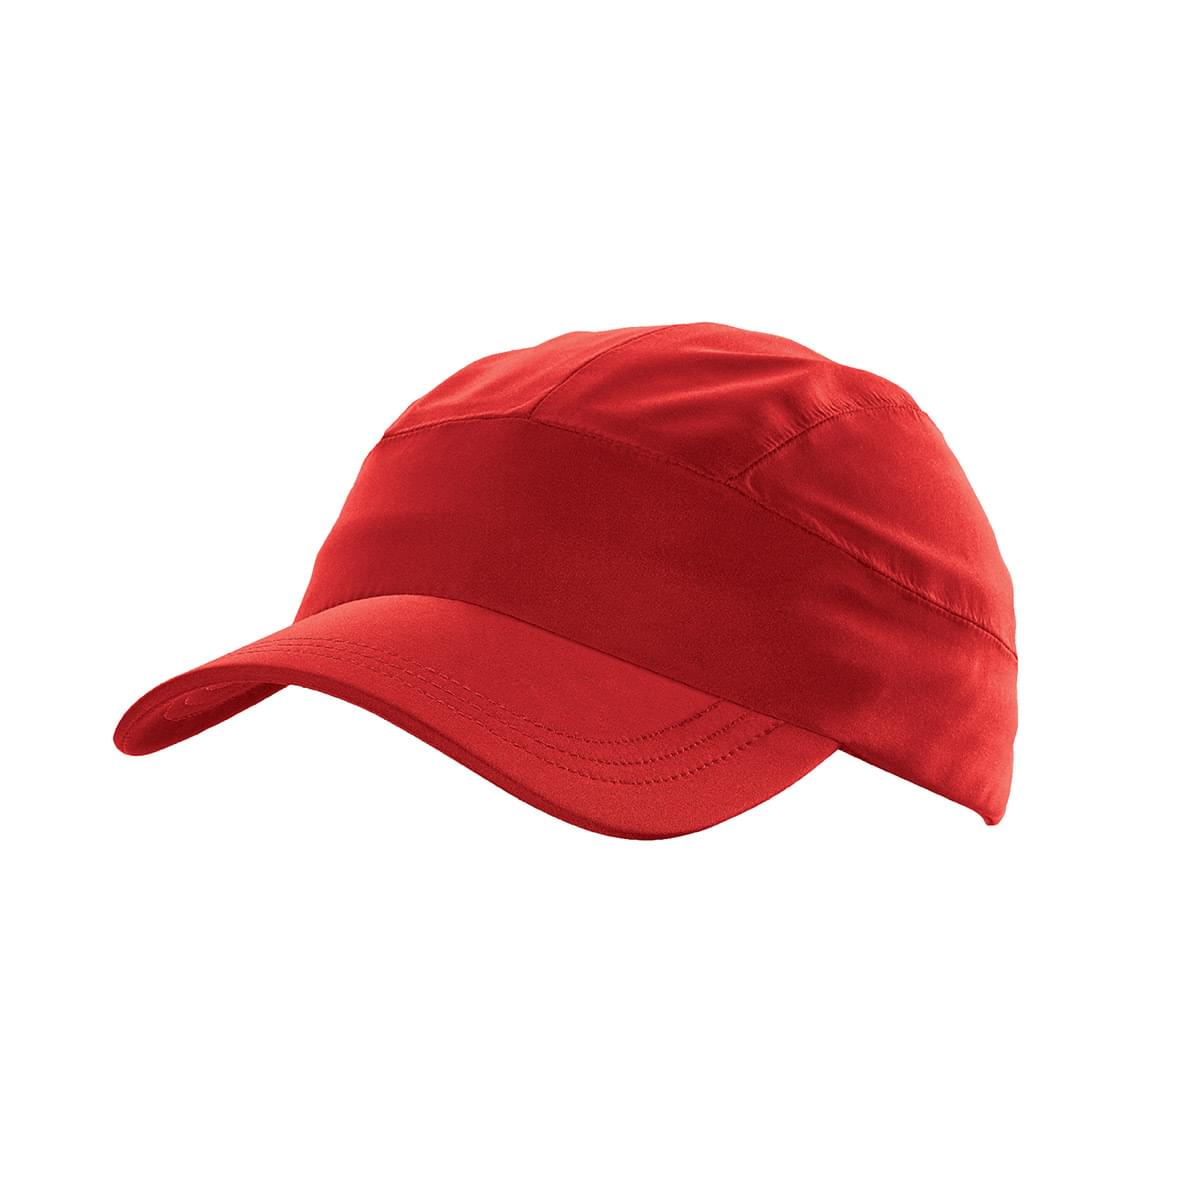 Bright Red Cap